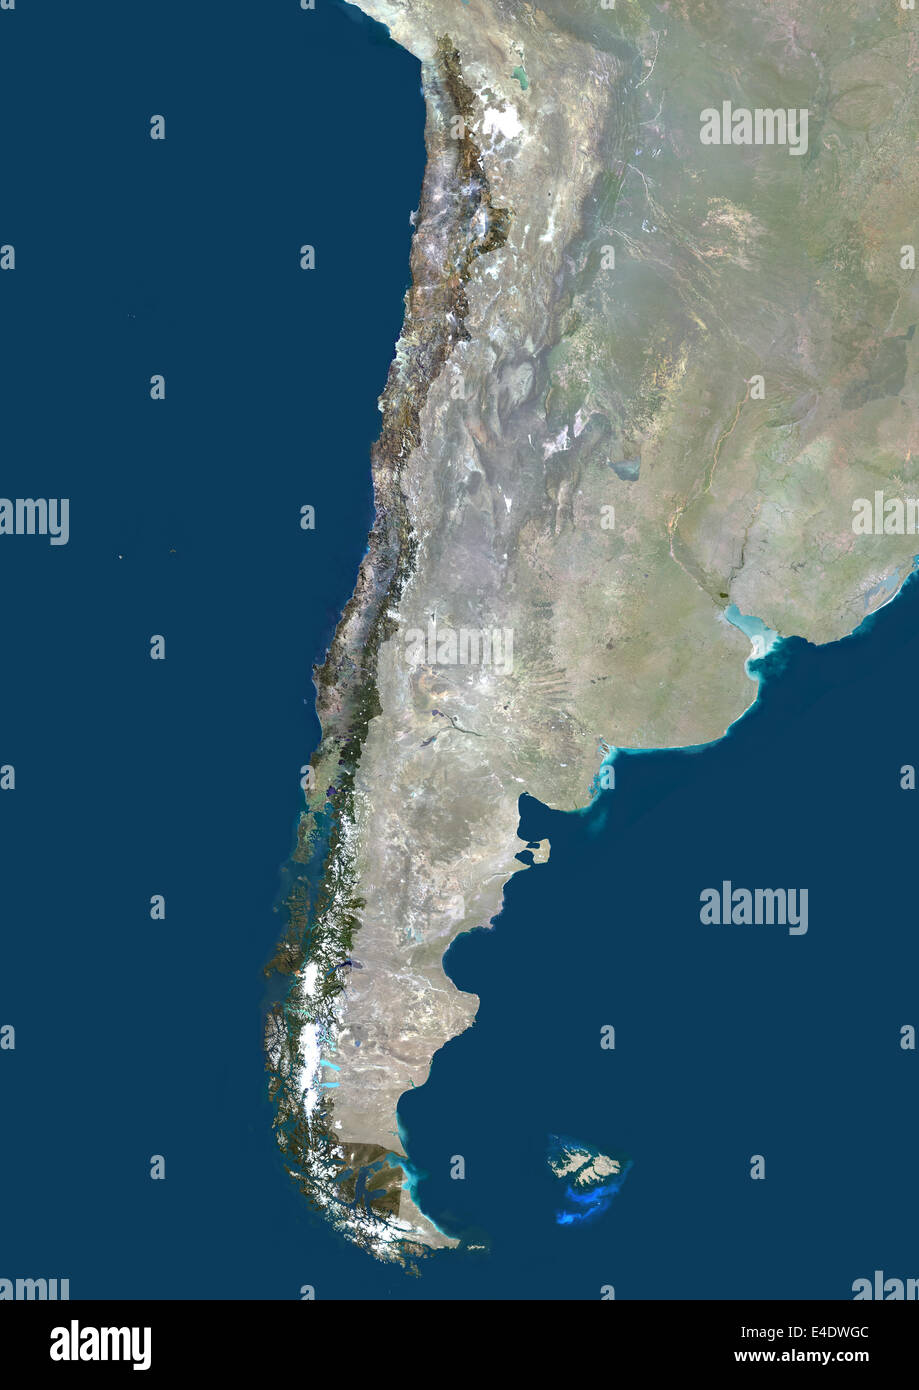 Chile, Südamerika, Echtfarben-Satellitenbild mit Maske. Satellitenansicht von Chile (mit Maske). Dieses Bild wurde von d zusammengestellt. Stockfoto